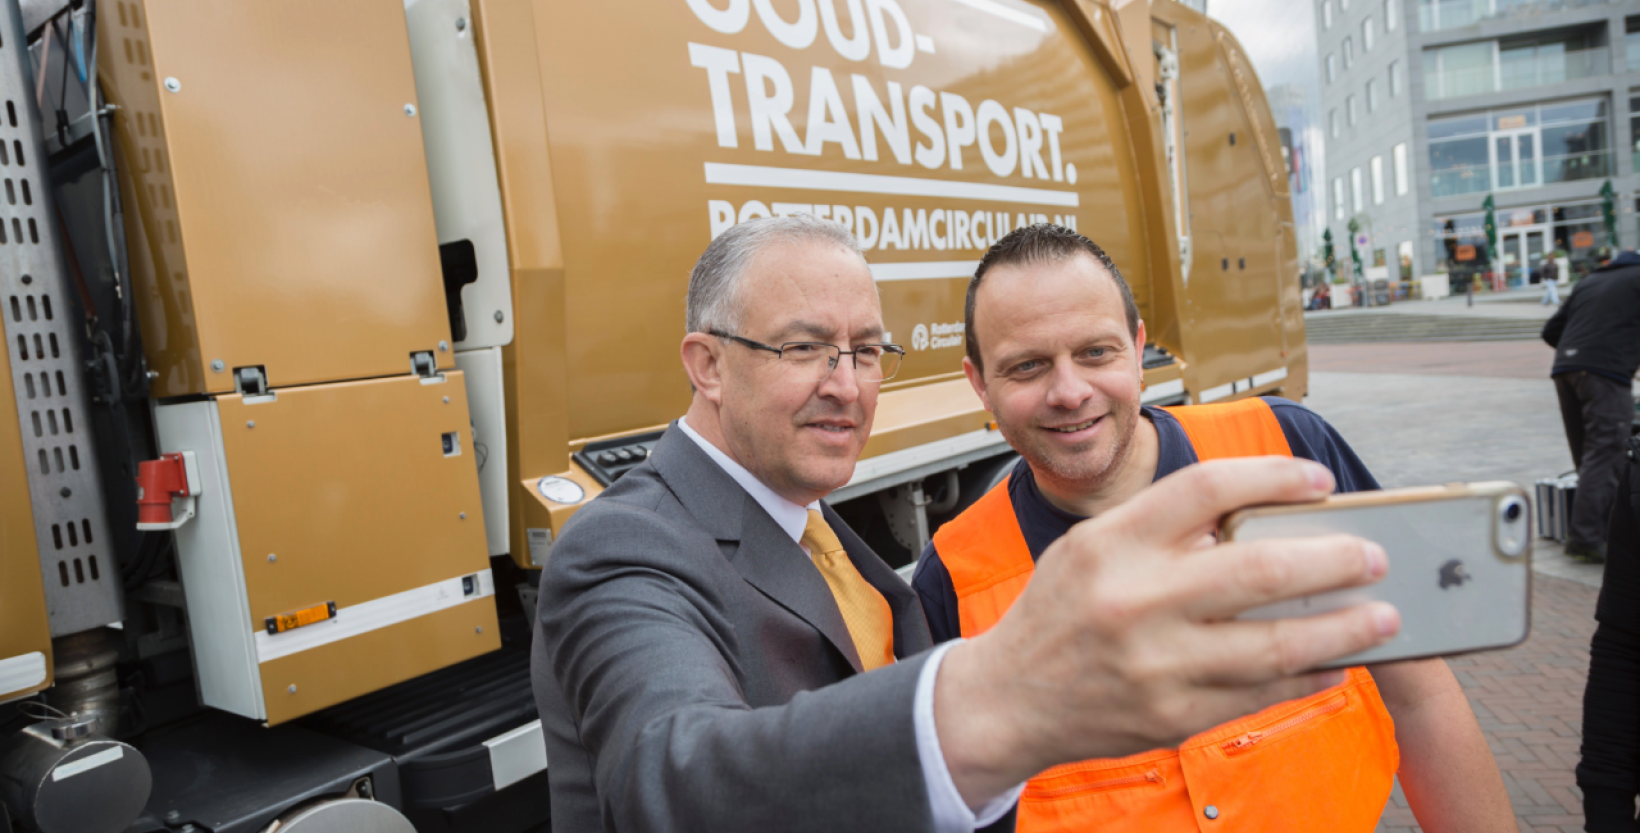 Op de foto burgemeester Aboutaleb en de chauffeur van het goudtransport, een gouden vuilniswagen. Ze nemen een selfie met op de achtergrond het goudtransport.